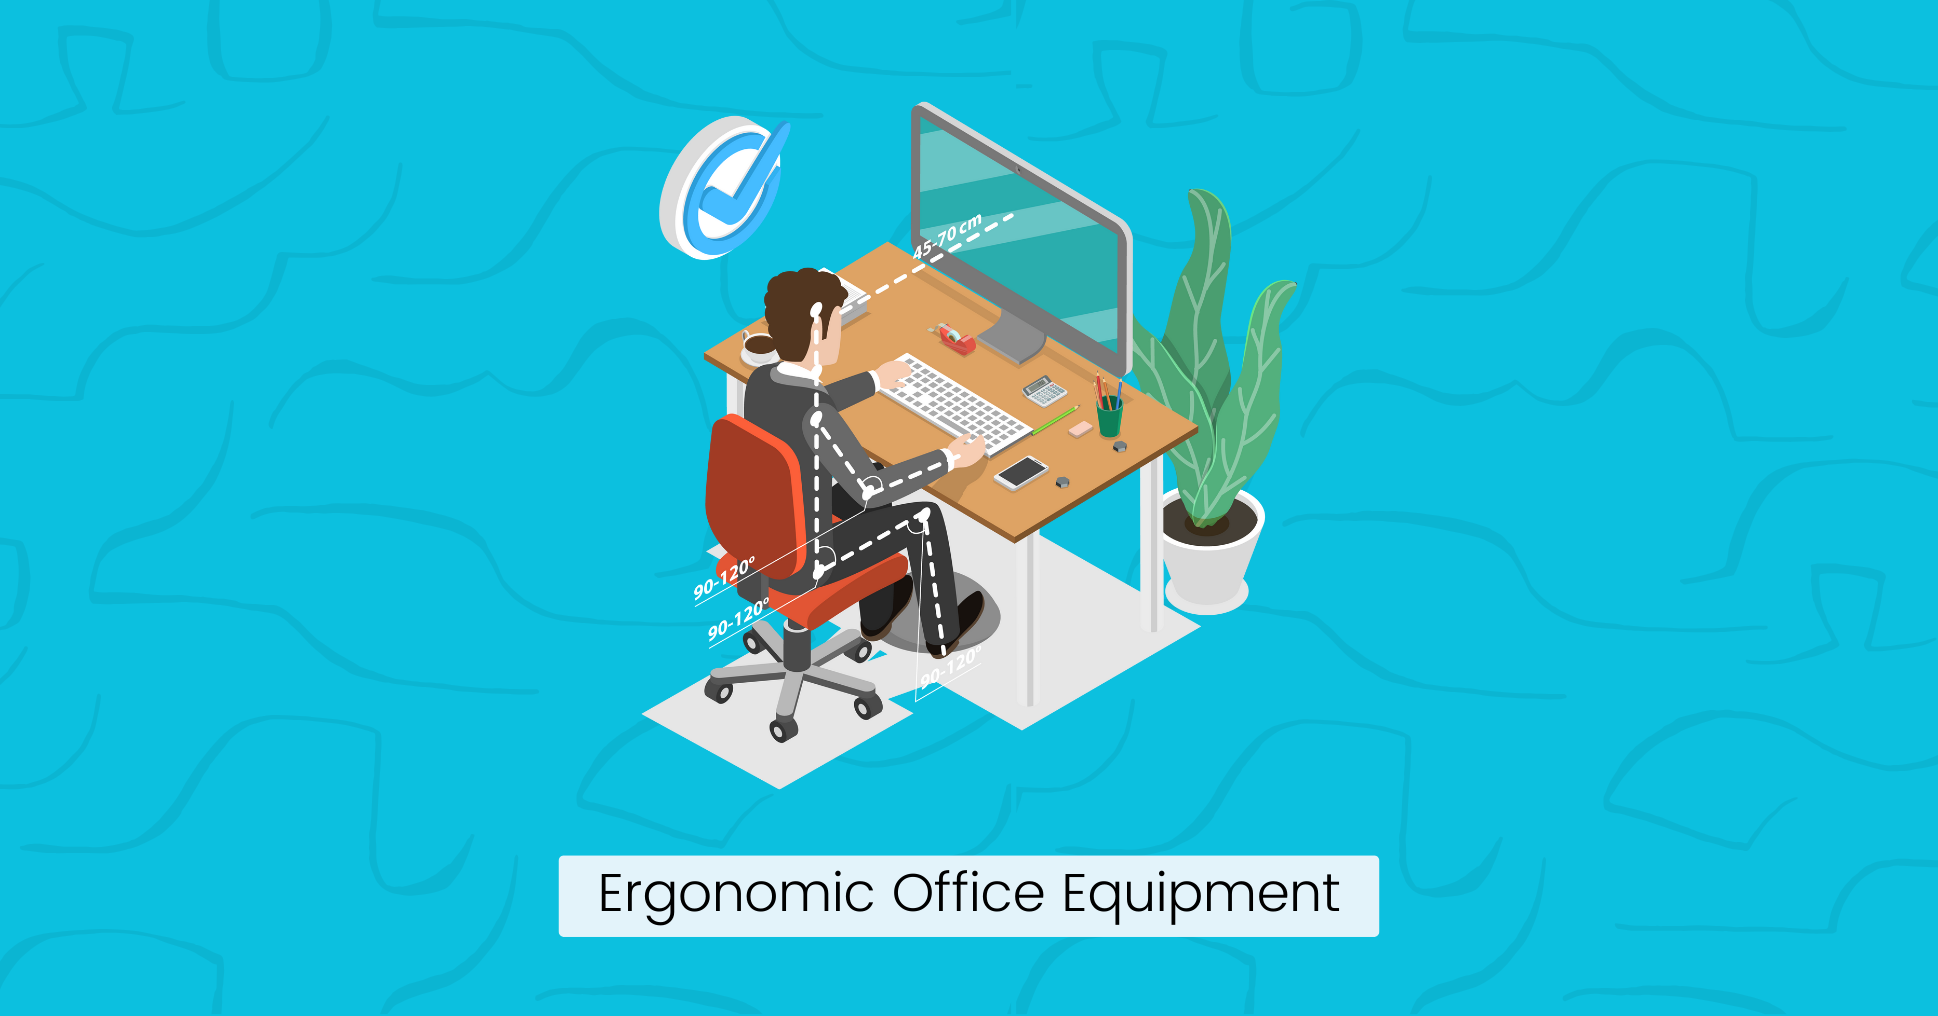 Ergonomic Office Equipment